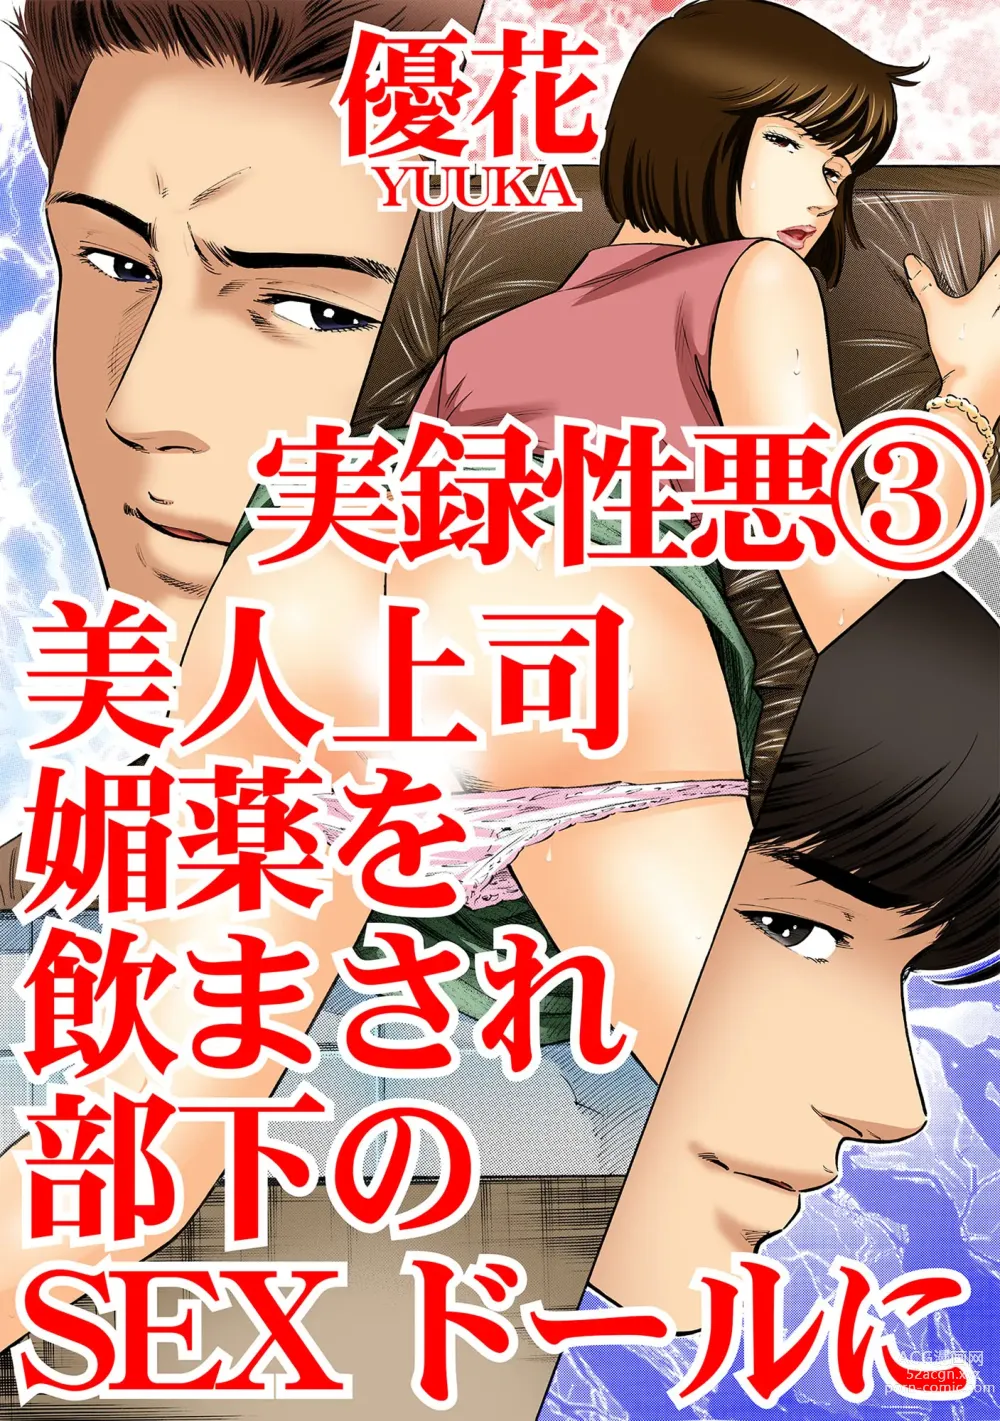 Page 1 of manga Jitsuroku Shouwaru 3 Bijin Joushi Biyaku o Nomasare Buka no SEX Doll ni